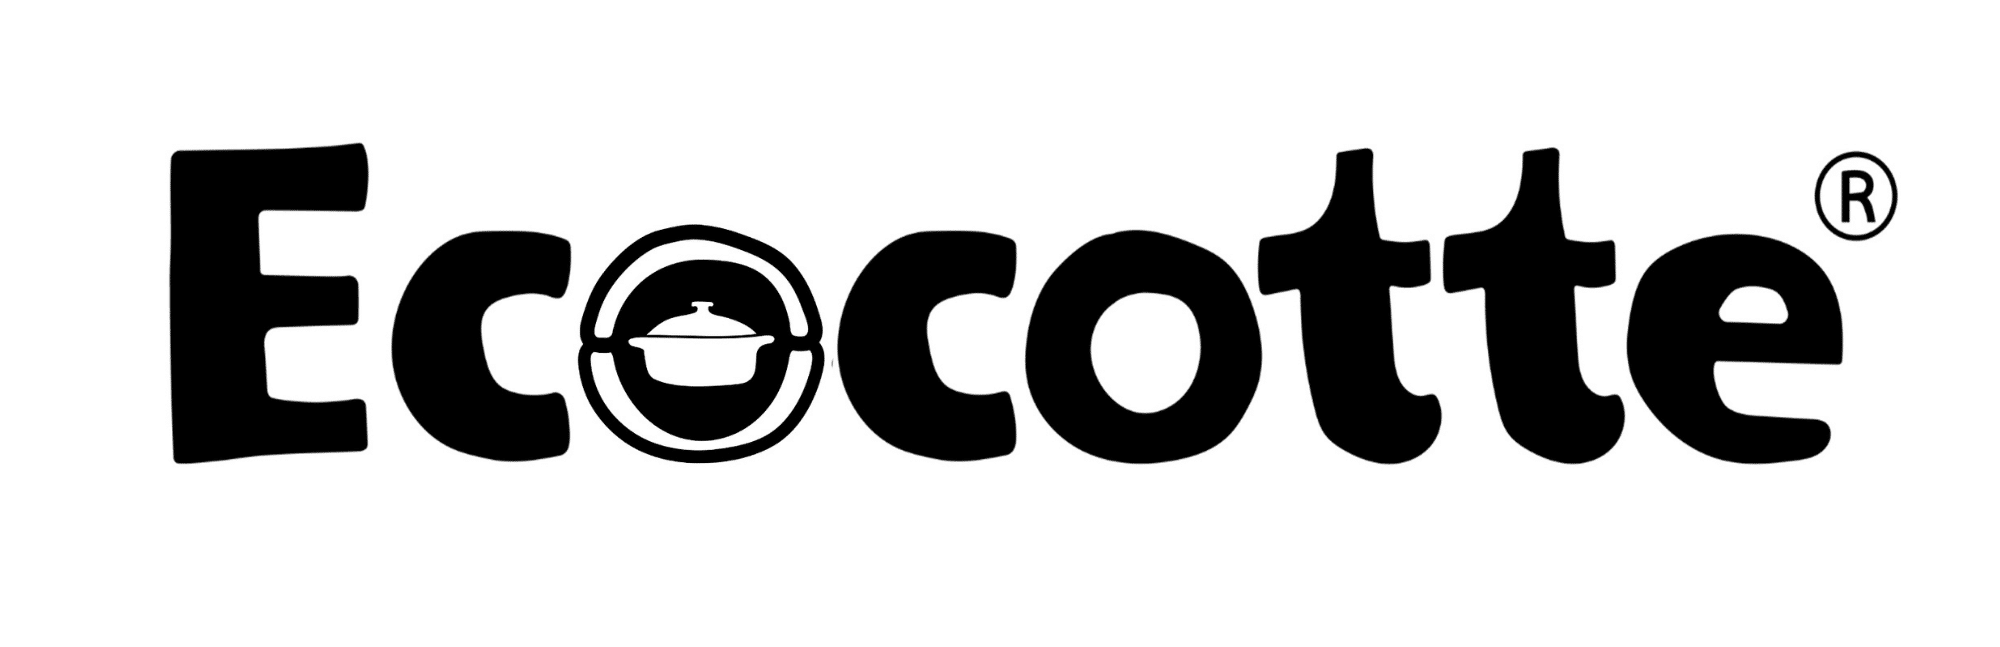 Logo_Ecocotte